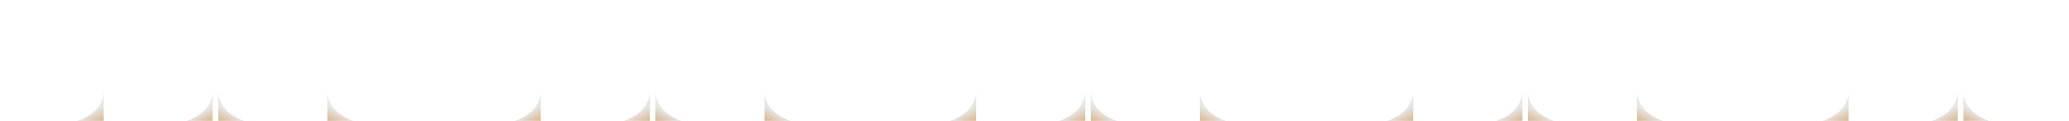 Pattern du logo JH Conseils en blanc et doré avec un dégradé d'opacité allant du haut vers le bas. Format téléphone